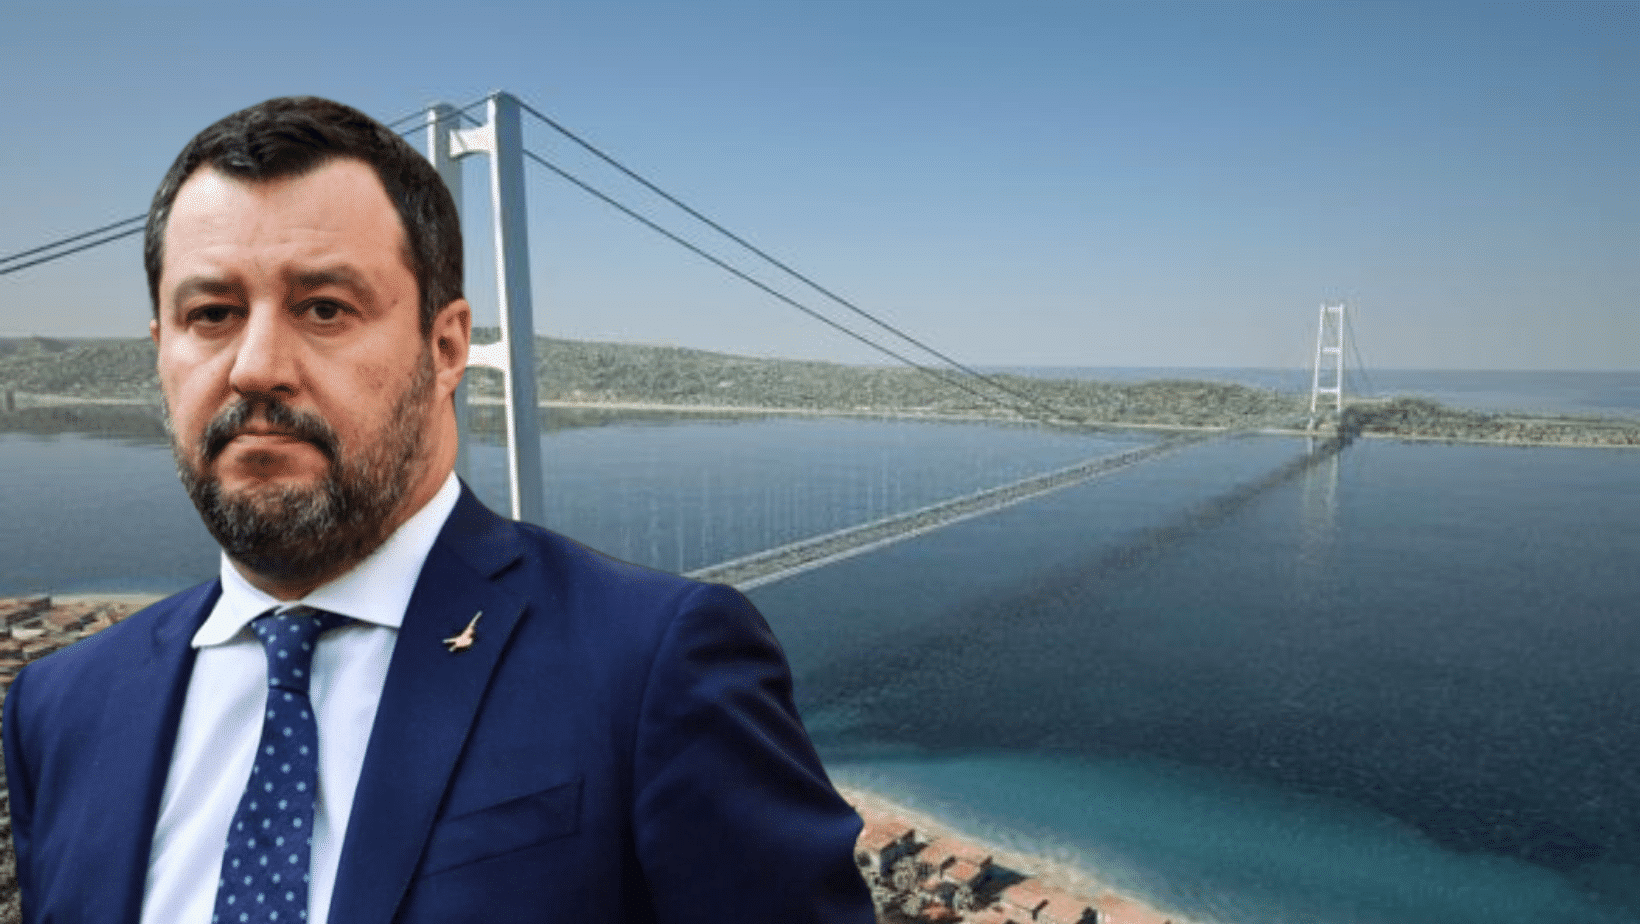 Salvini preoccupato per il ponte sullo Stretto: “Qualcuno tenterà di bloccare il progetto per ideologia”